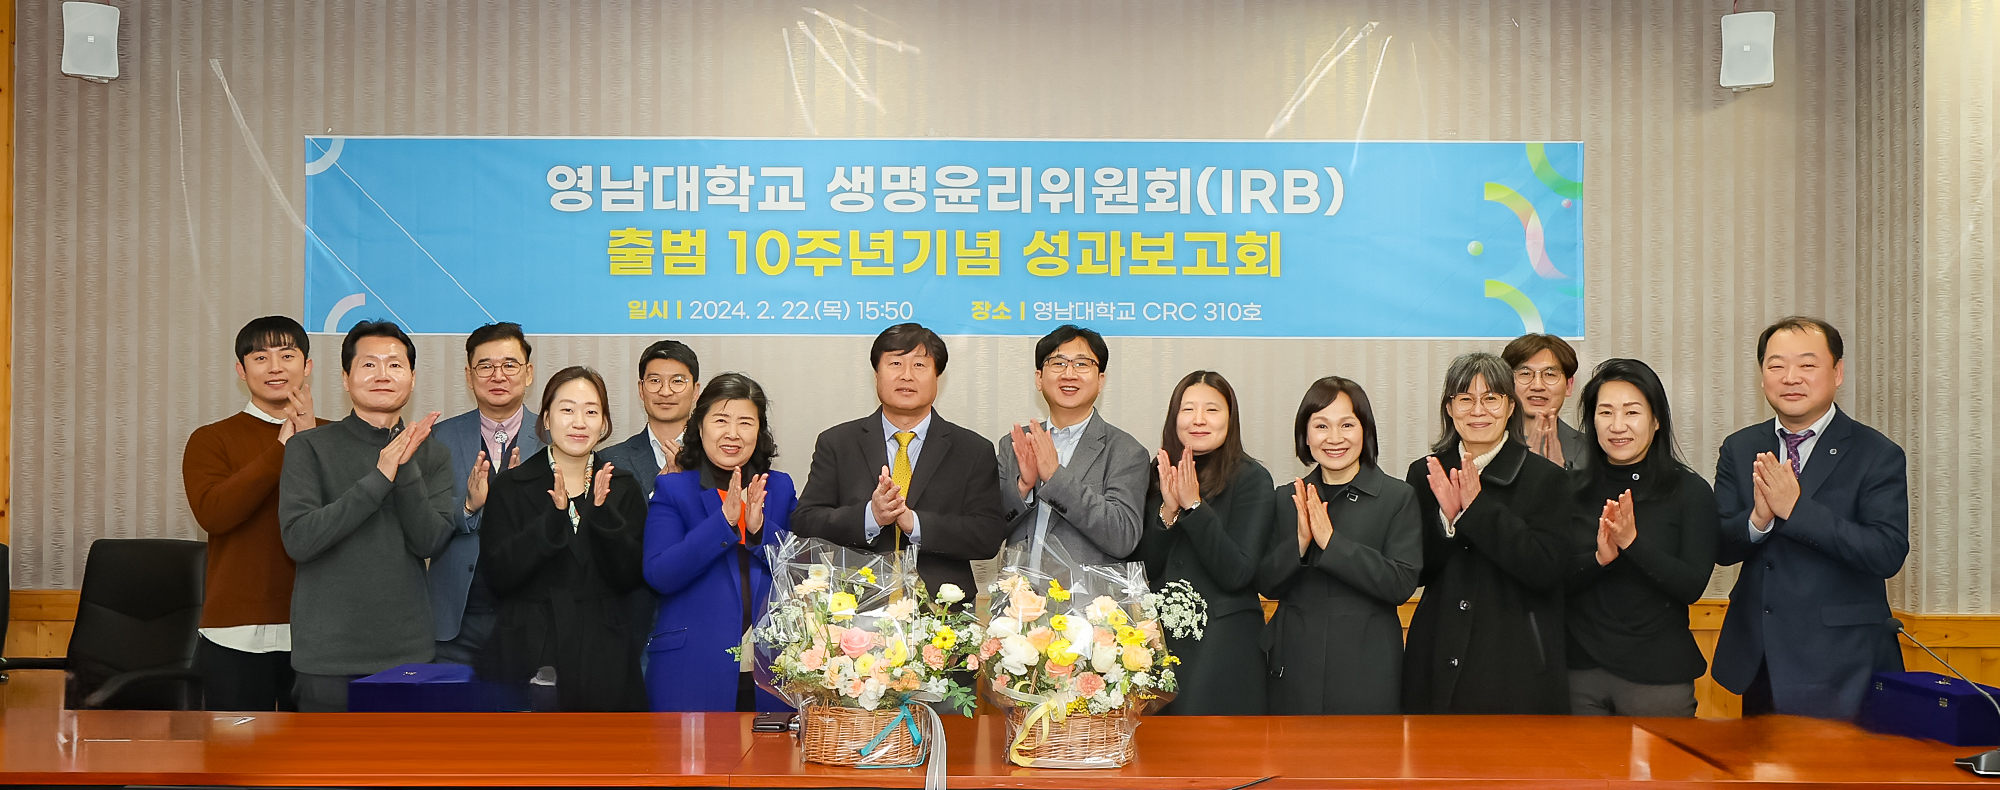 영남대학교 생명윤리위원회(IRB) 출범 10주년기념 성과보고회 개최